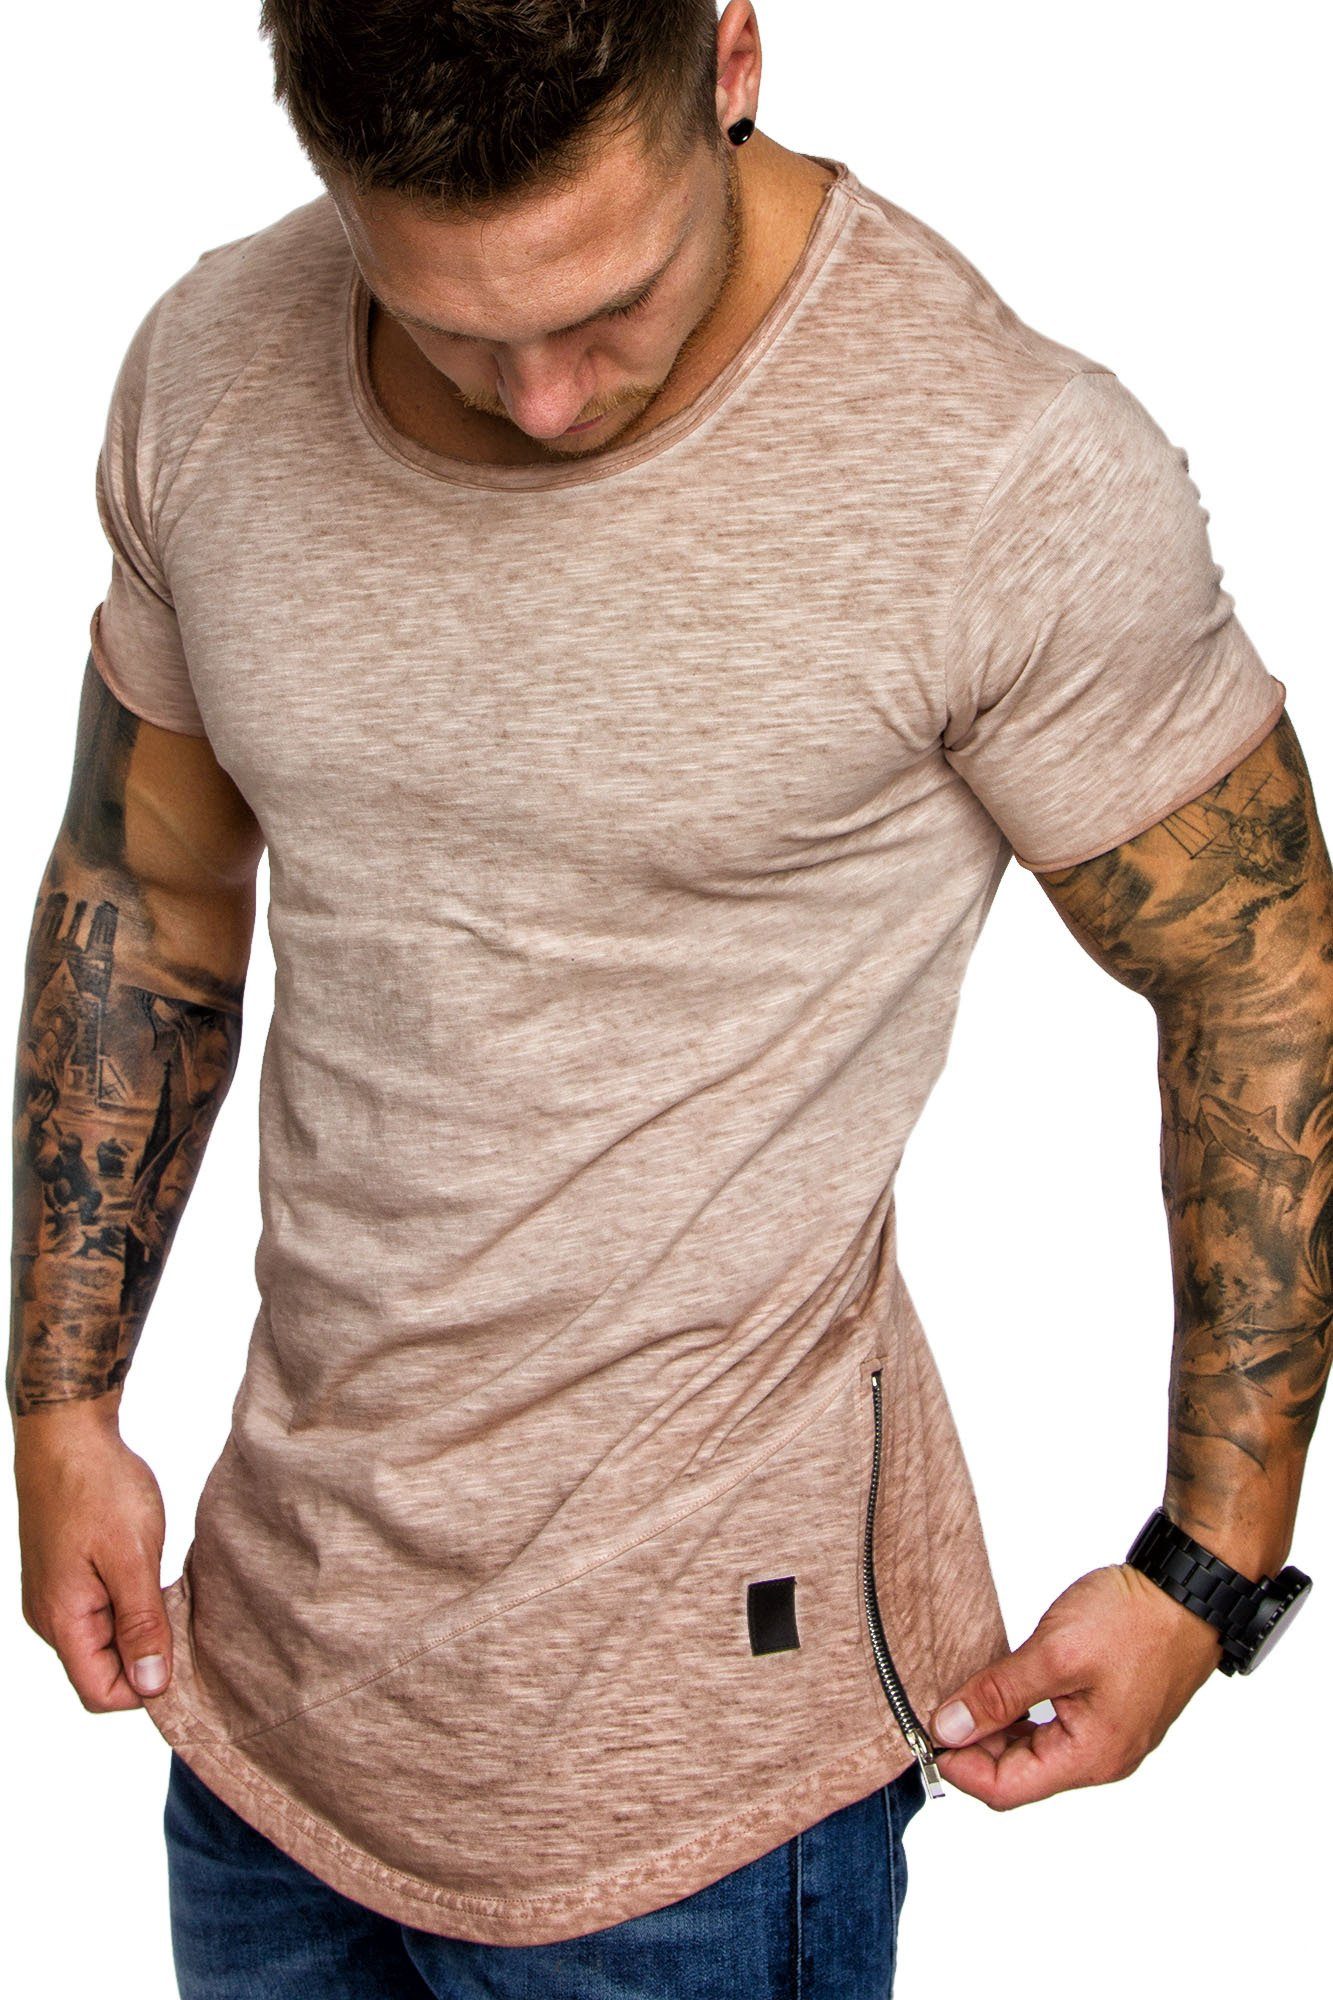 Amaci&Sons T-Shirt Zipper Shirt Crew Verwaschen Basic Neck Rundhals Herren Vintage Oversize AUSTIN Beige